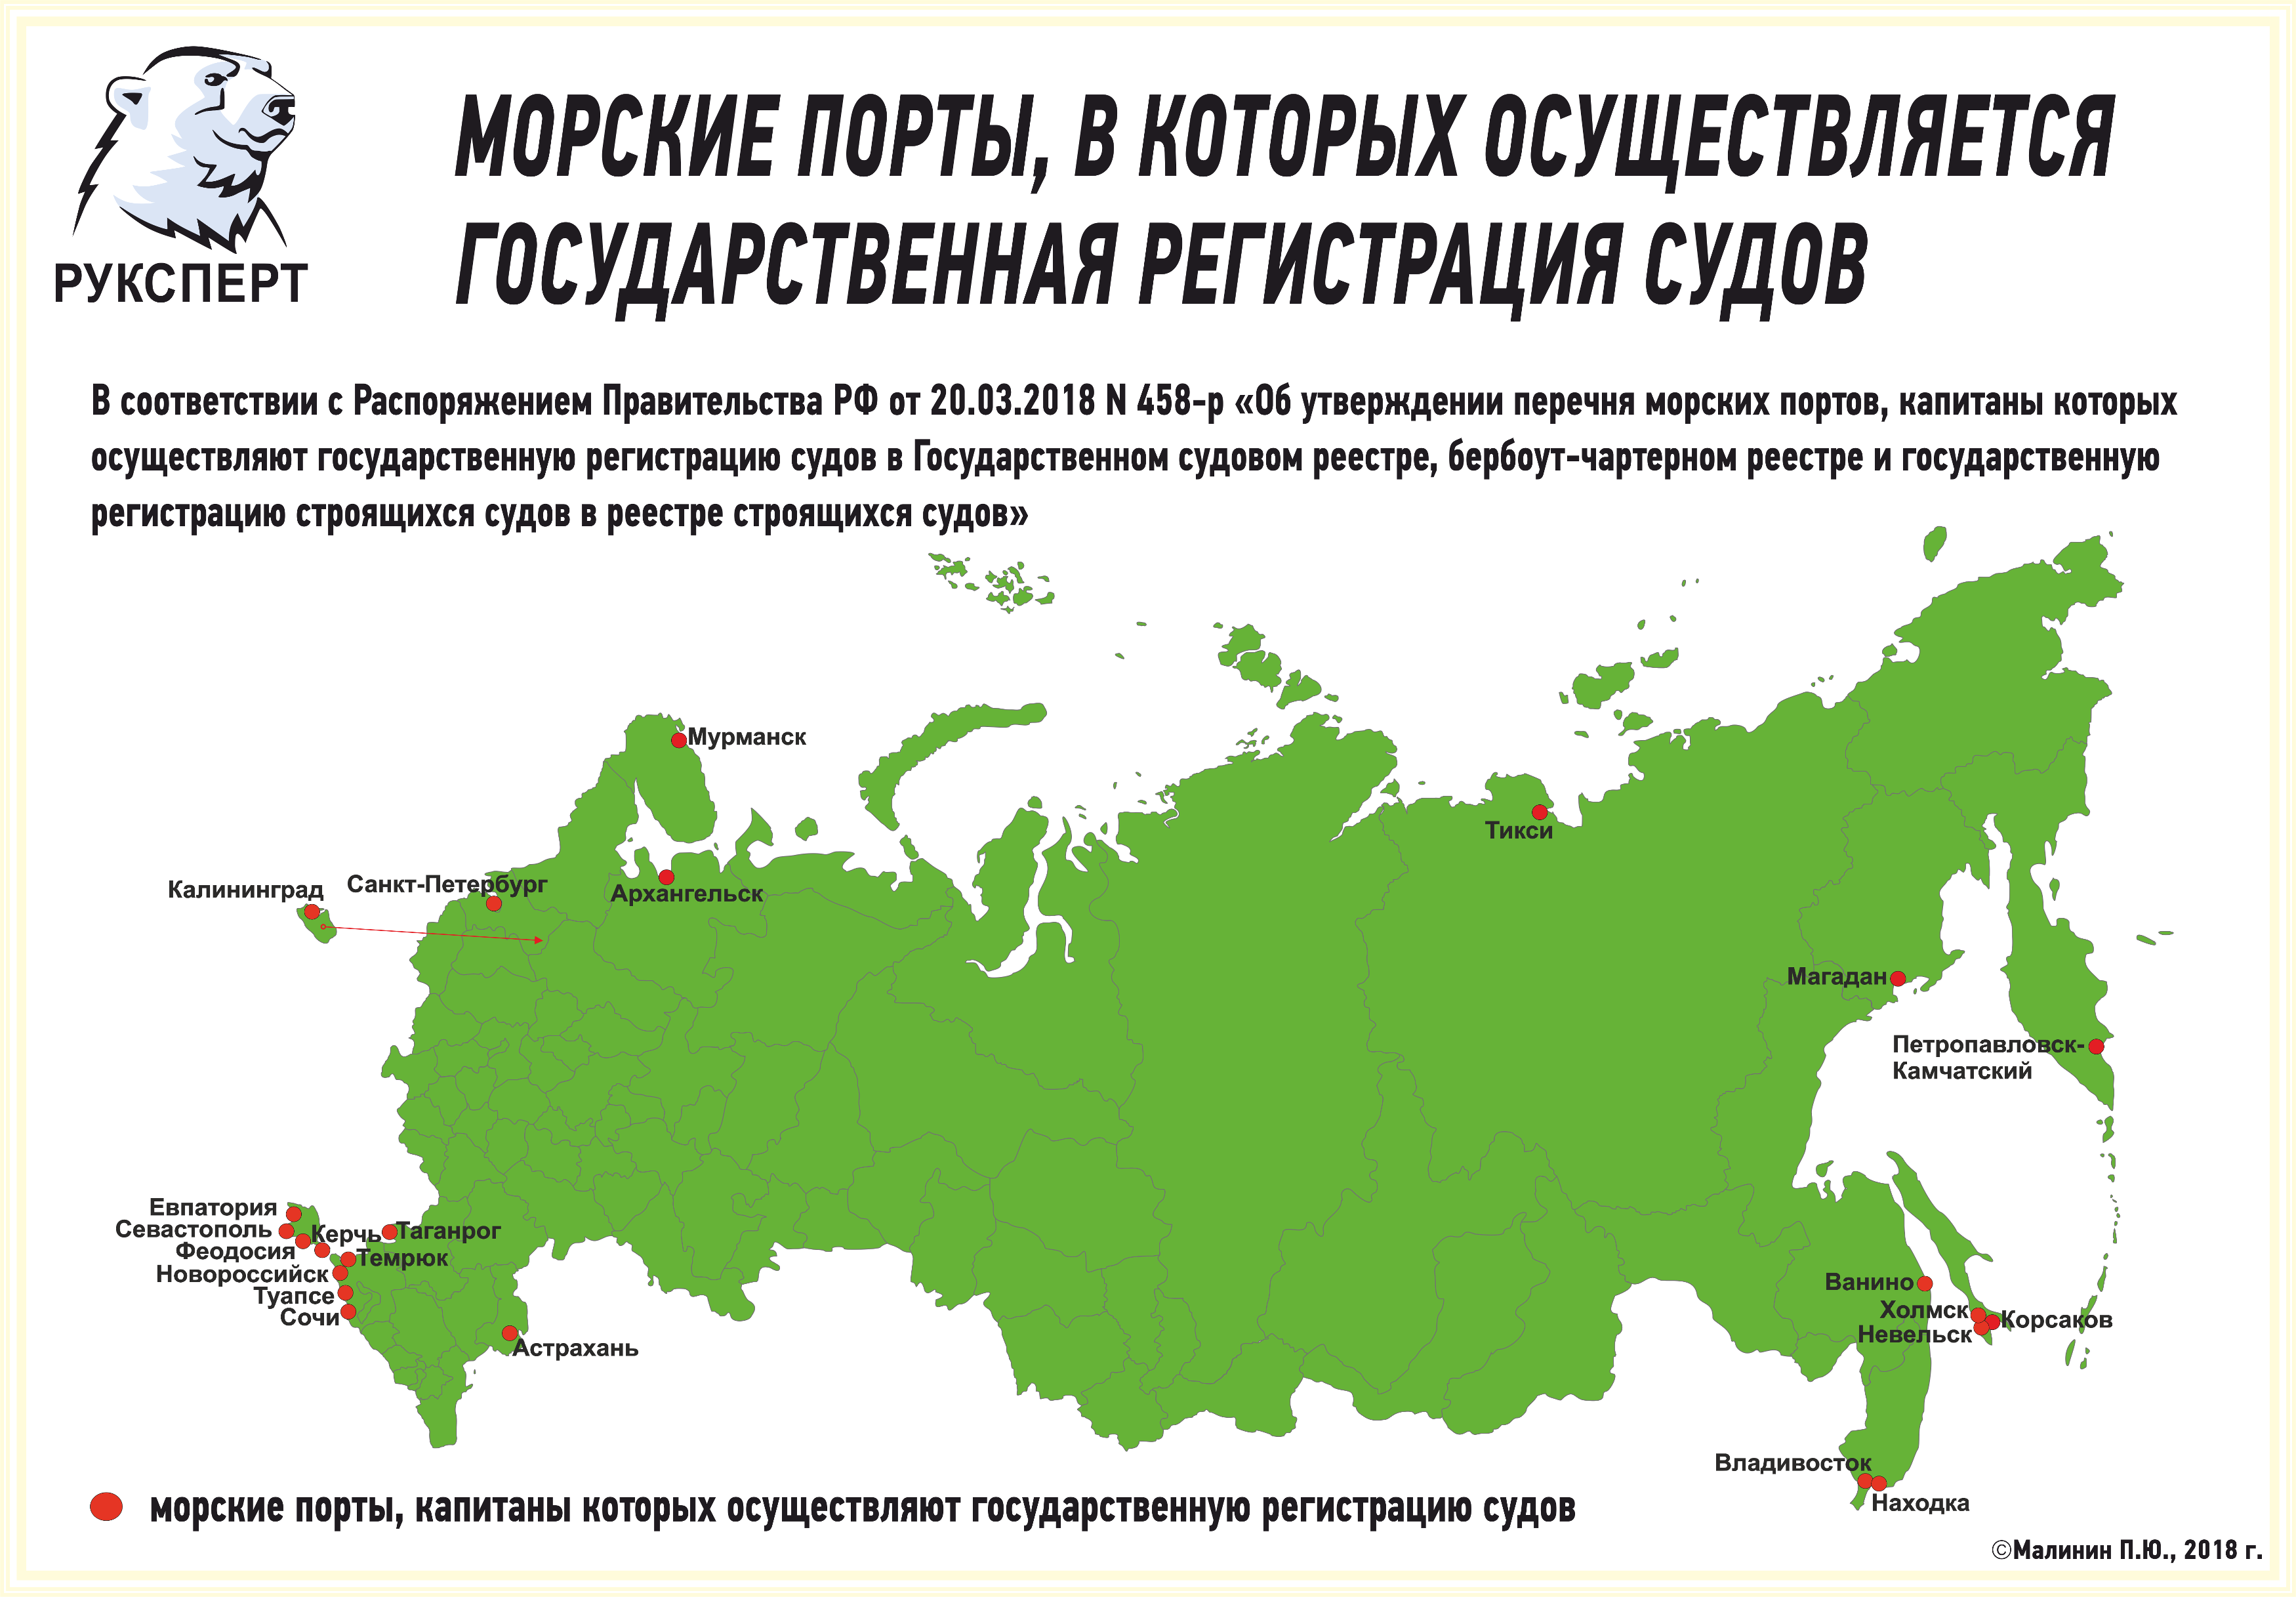 Назвать главные порты. Крупнейшие Порты РФ на карте. Крупнейшие российские Порты на карте. Крупнейшие порта РФ на карте. Крупнейшие морские Порты РФ на карте.